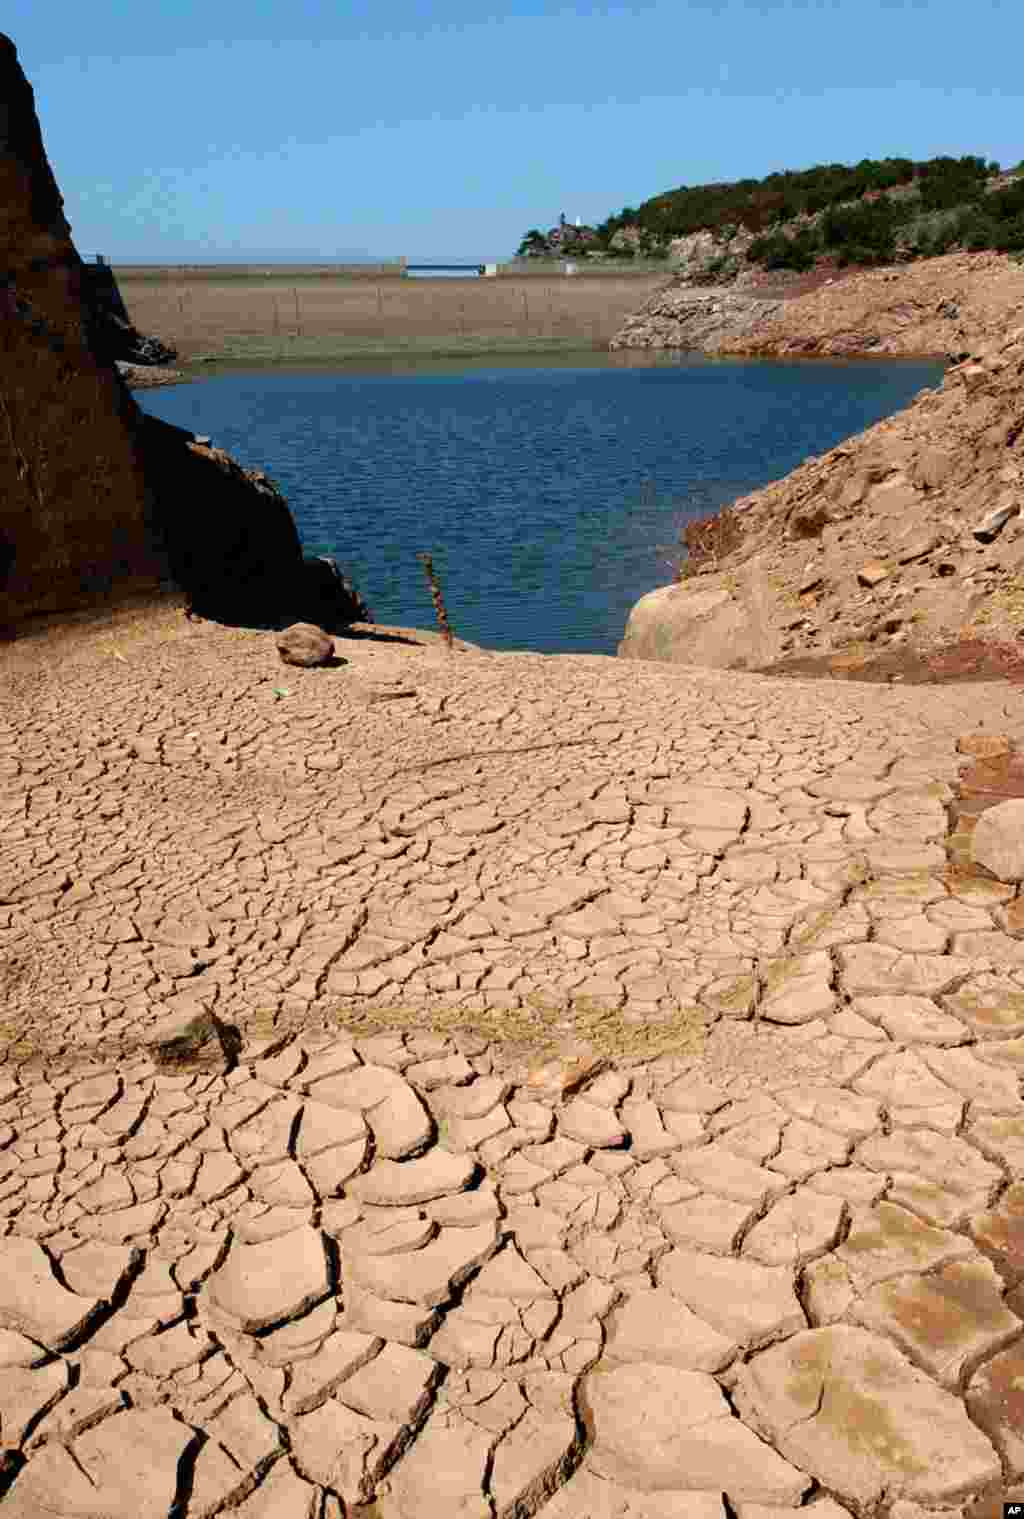 جهیل ایباردین که شهر های جنوبی فرانسه را آب آشامیدنی می داد، به دلیل گرمای شدید سال روان رو به خشک شدن است.